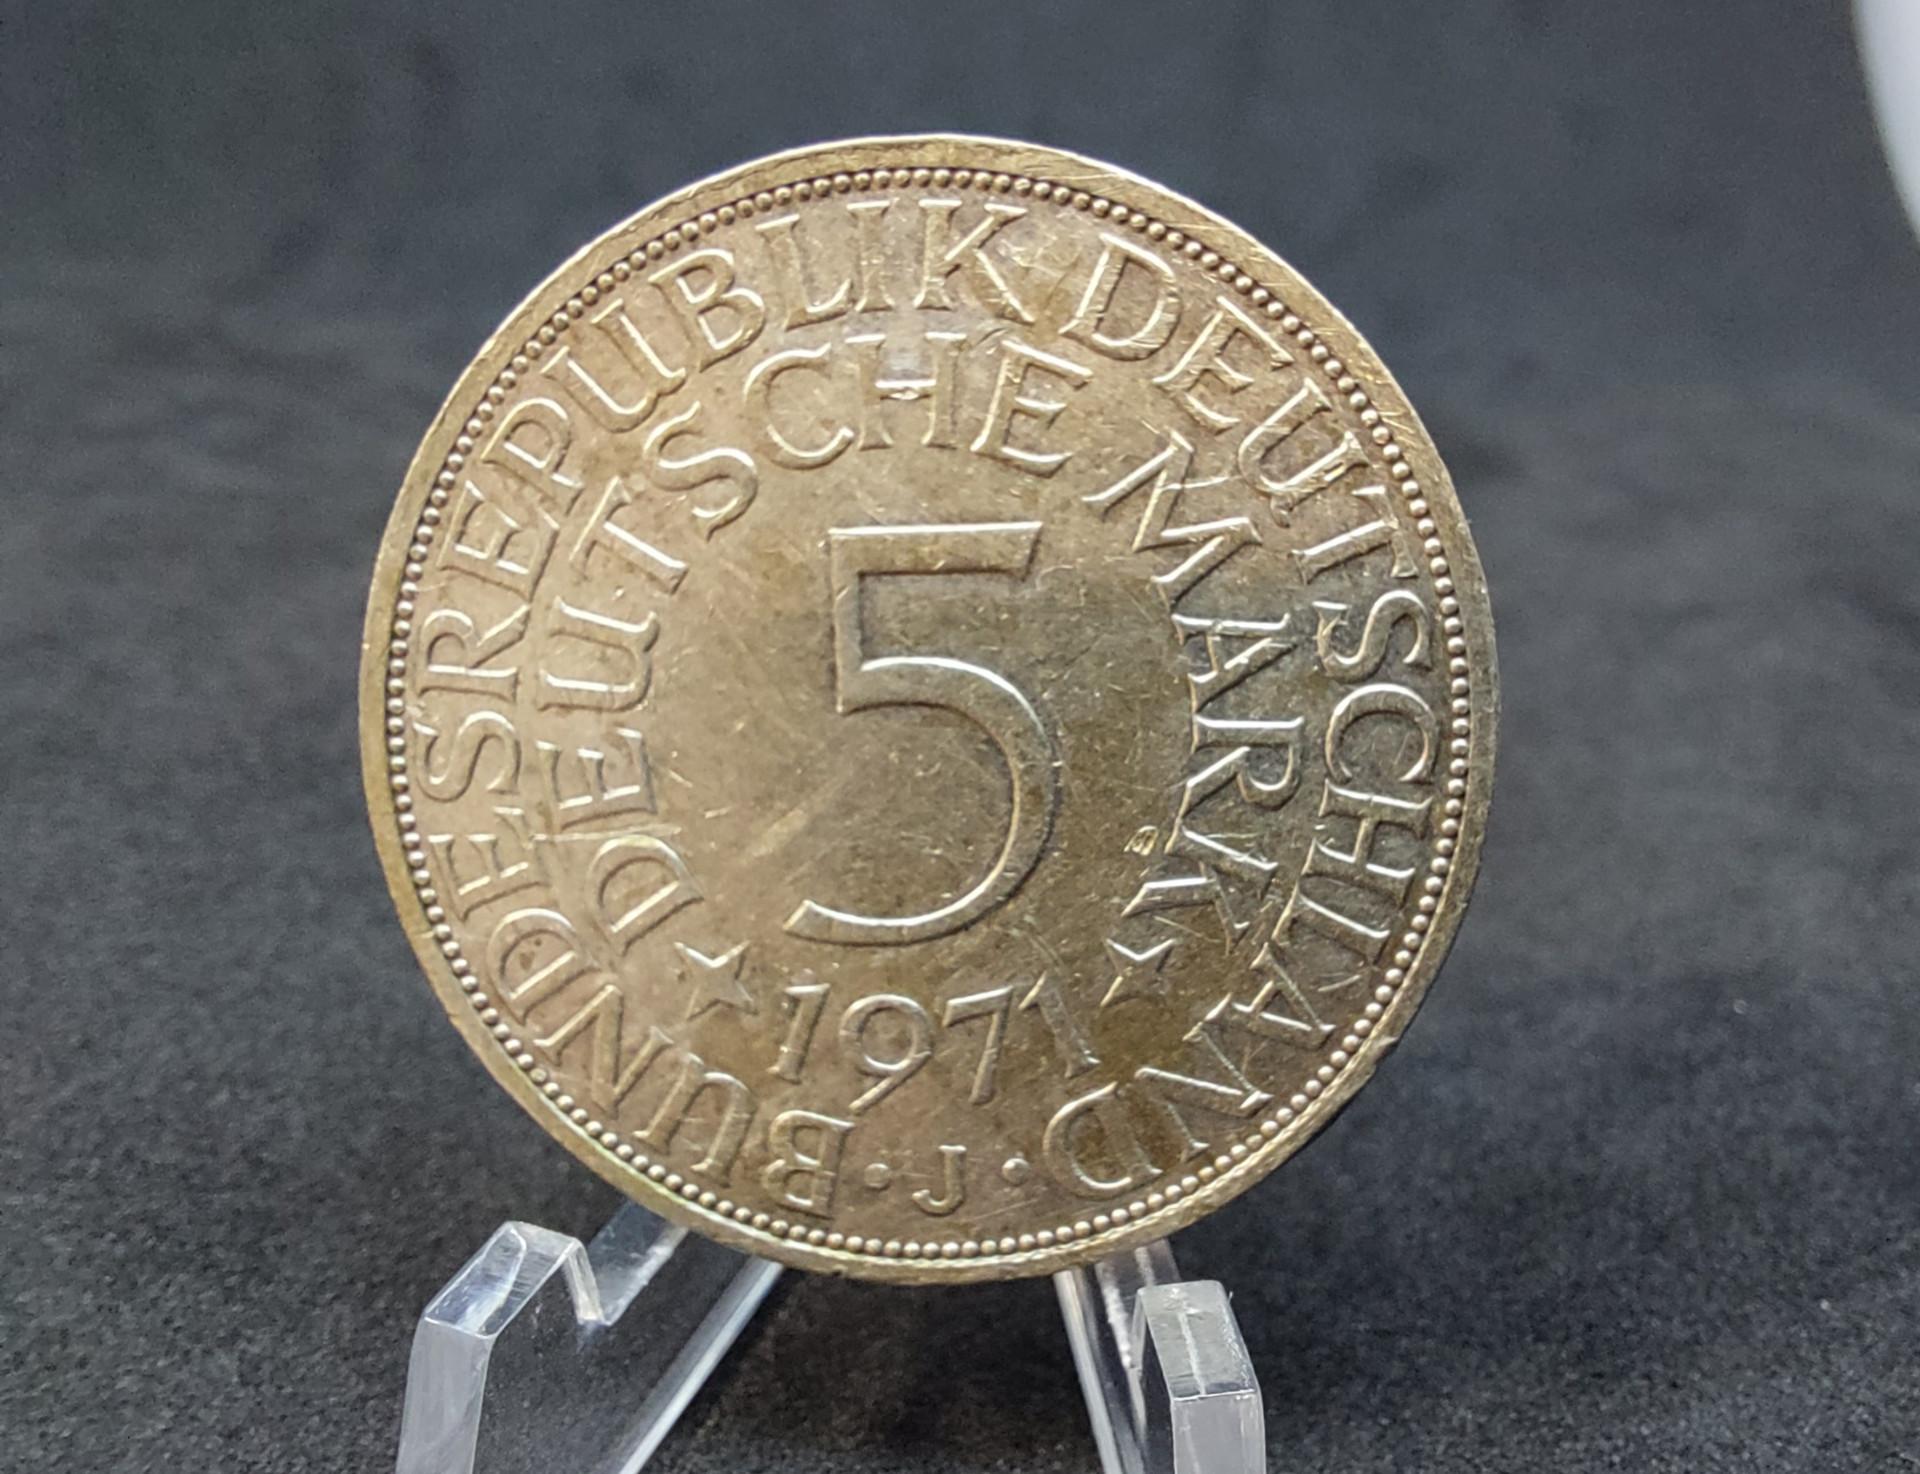 5 Markės sidabrinė moneta